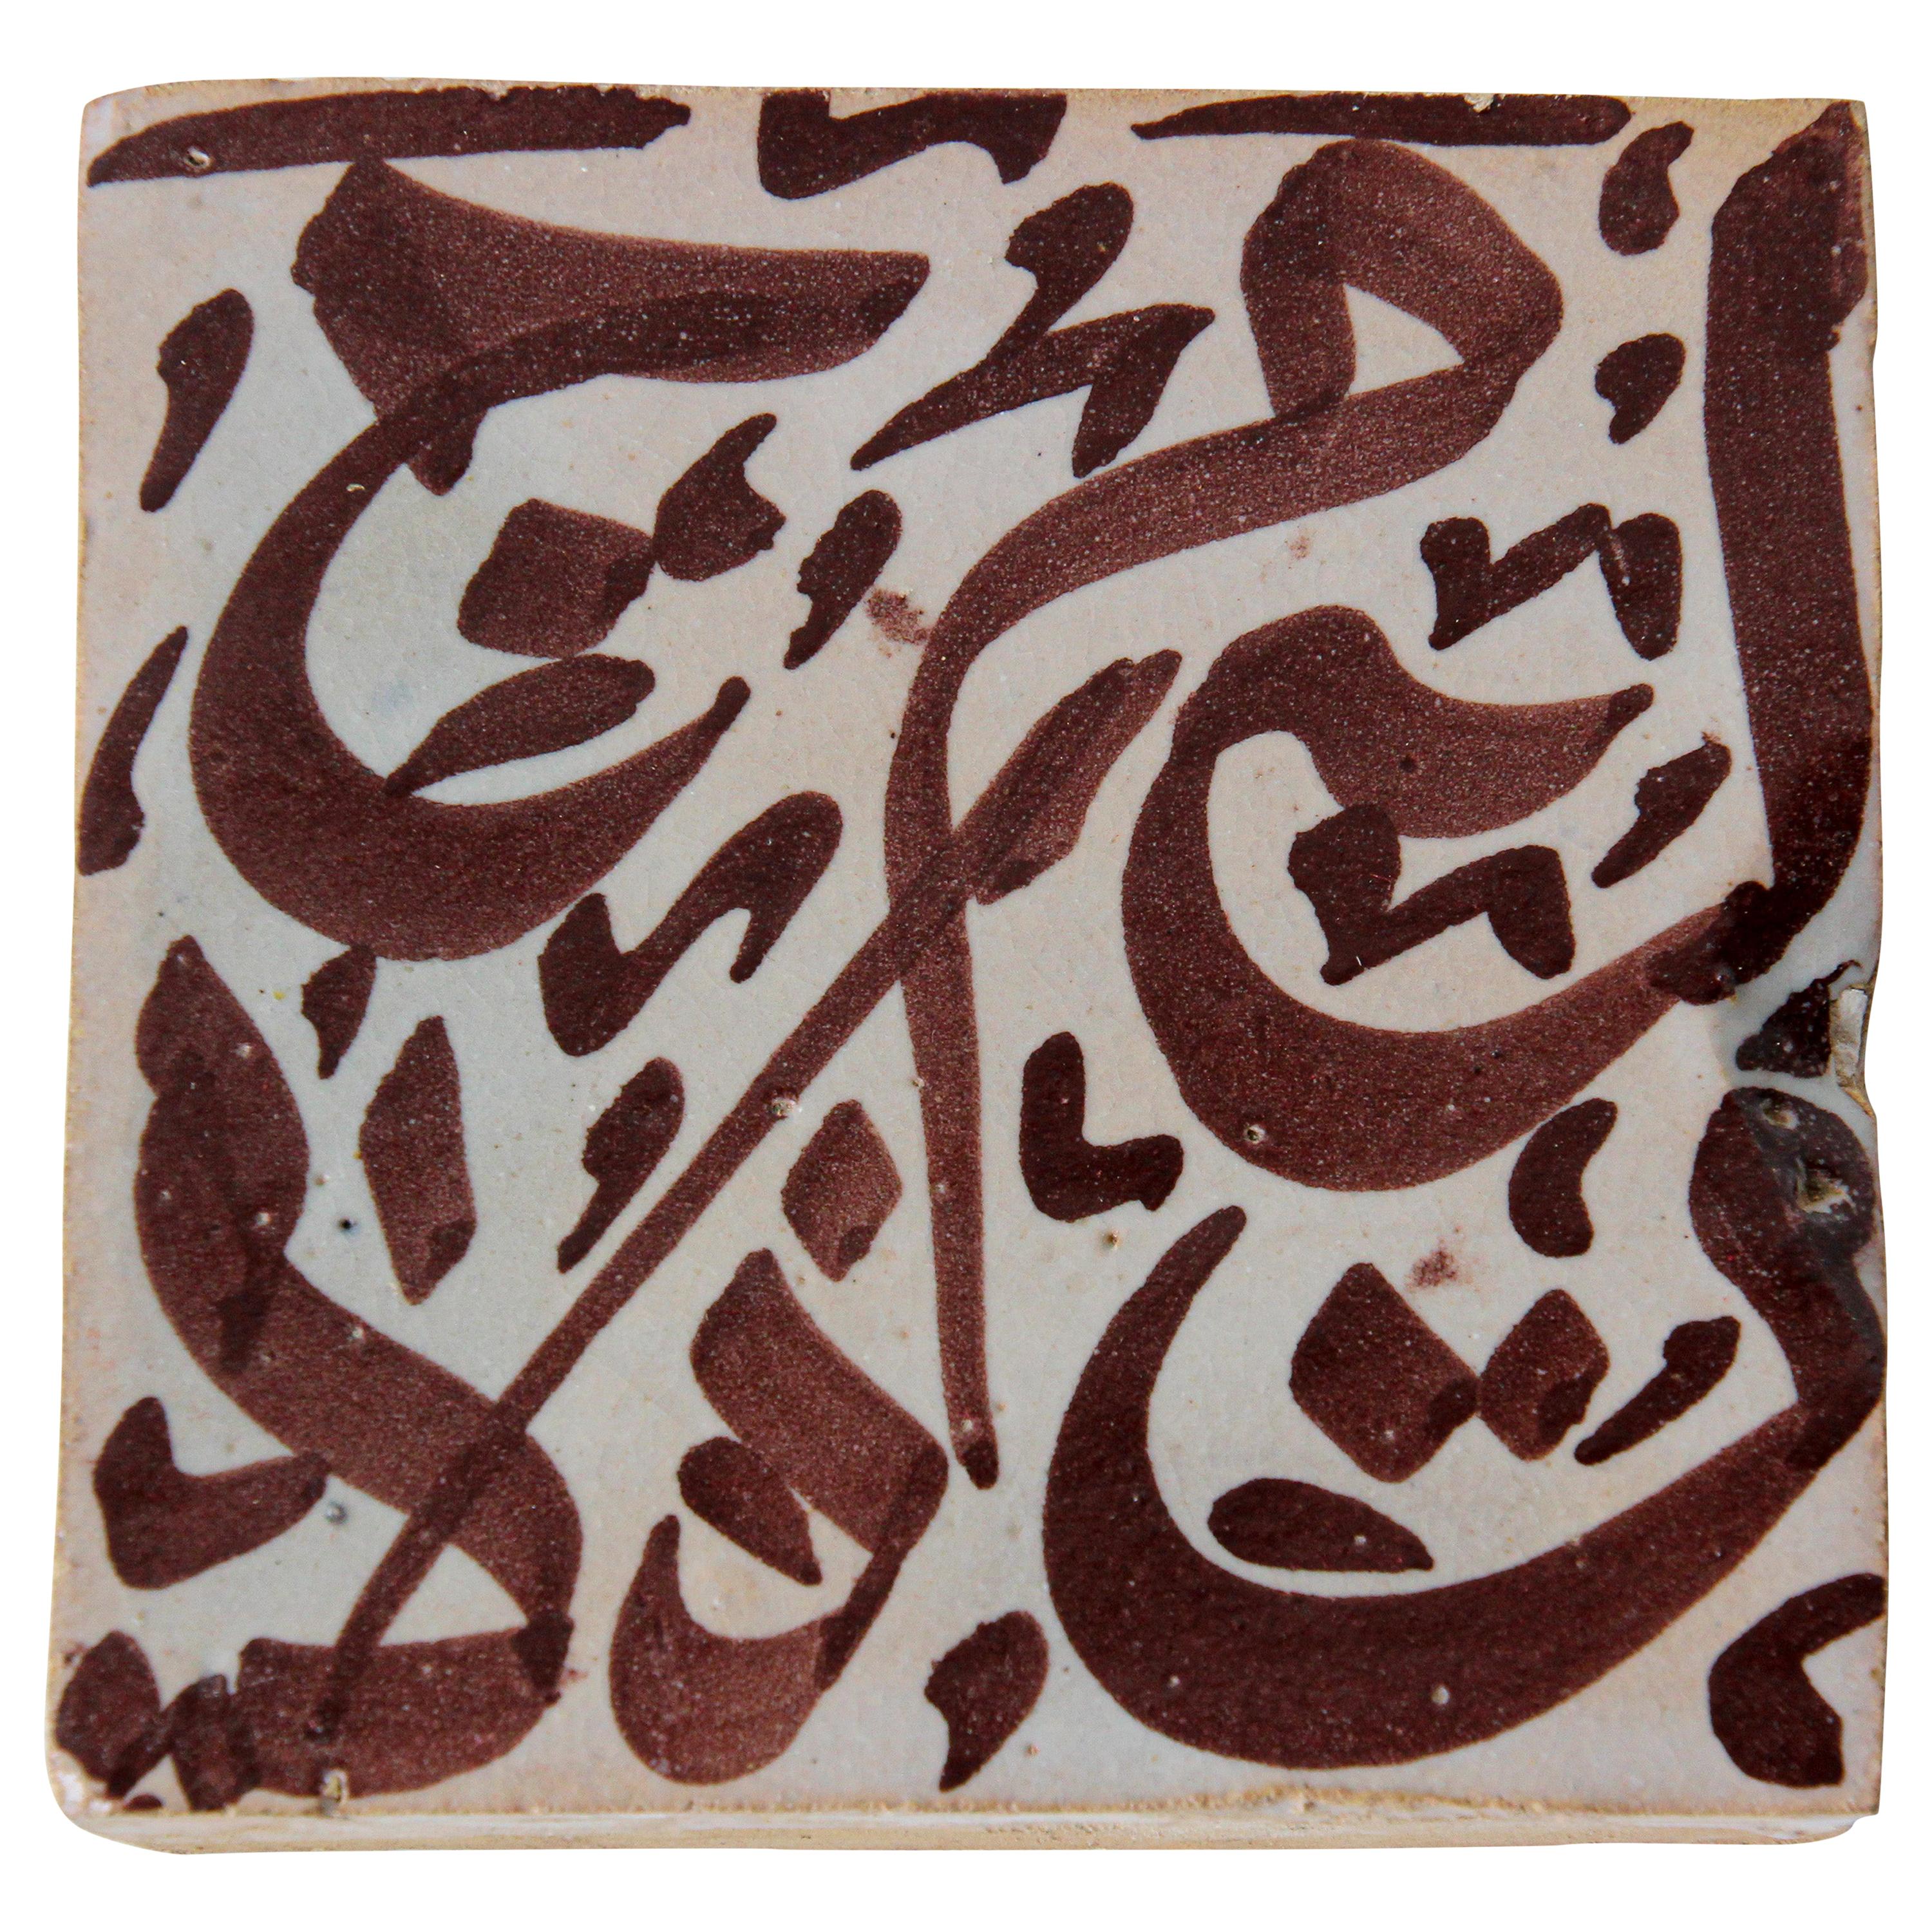 Carreau mauresque avec écriture arabe en brun